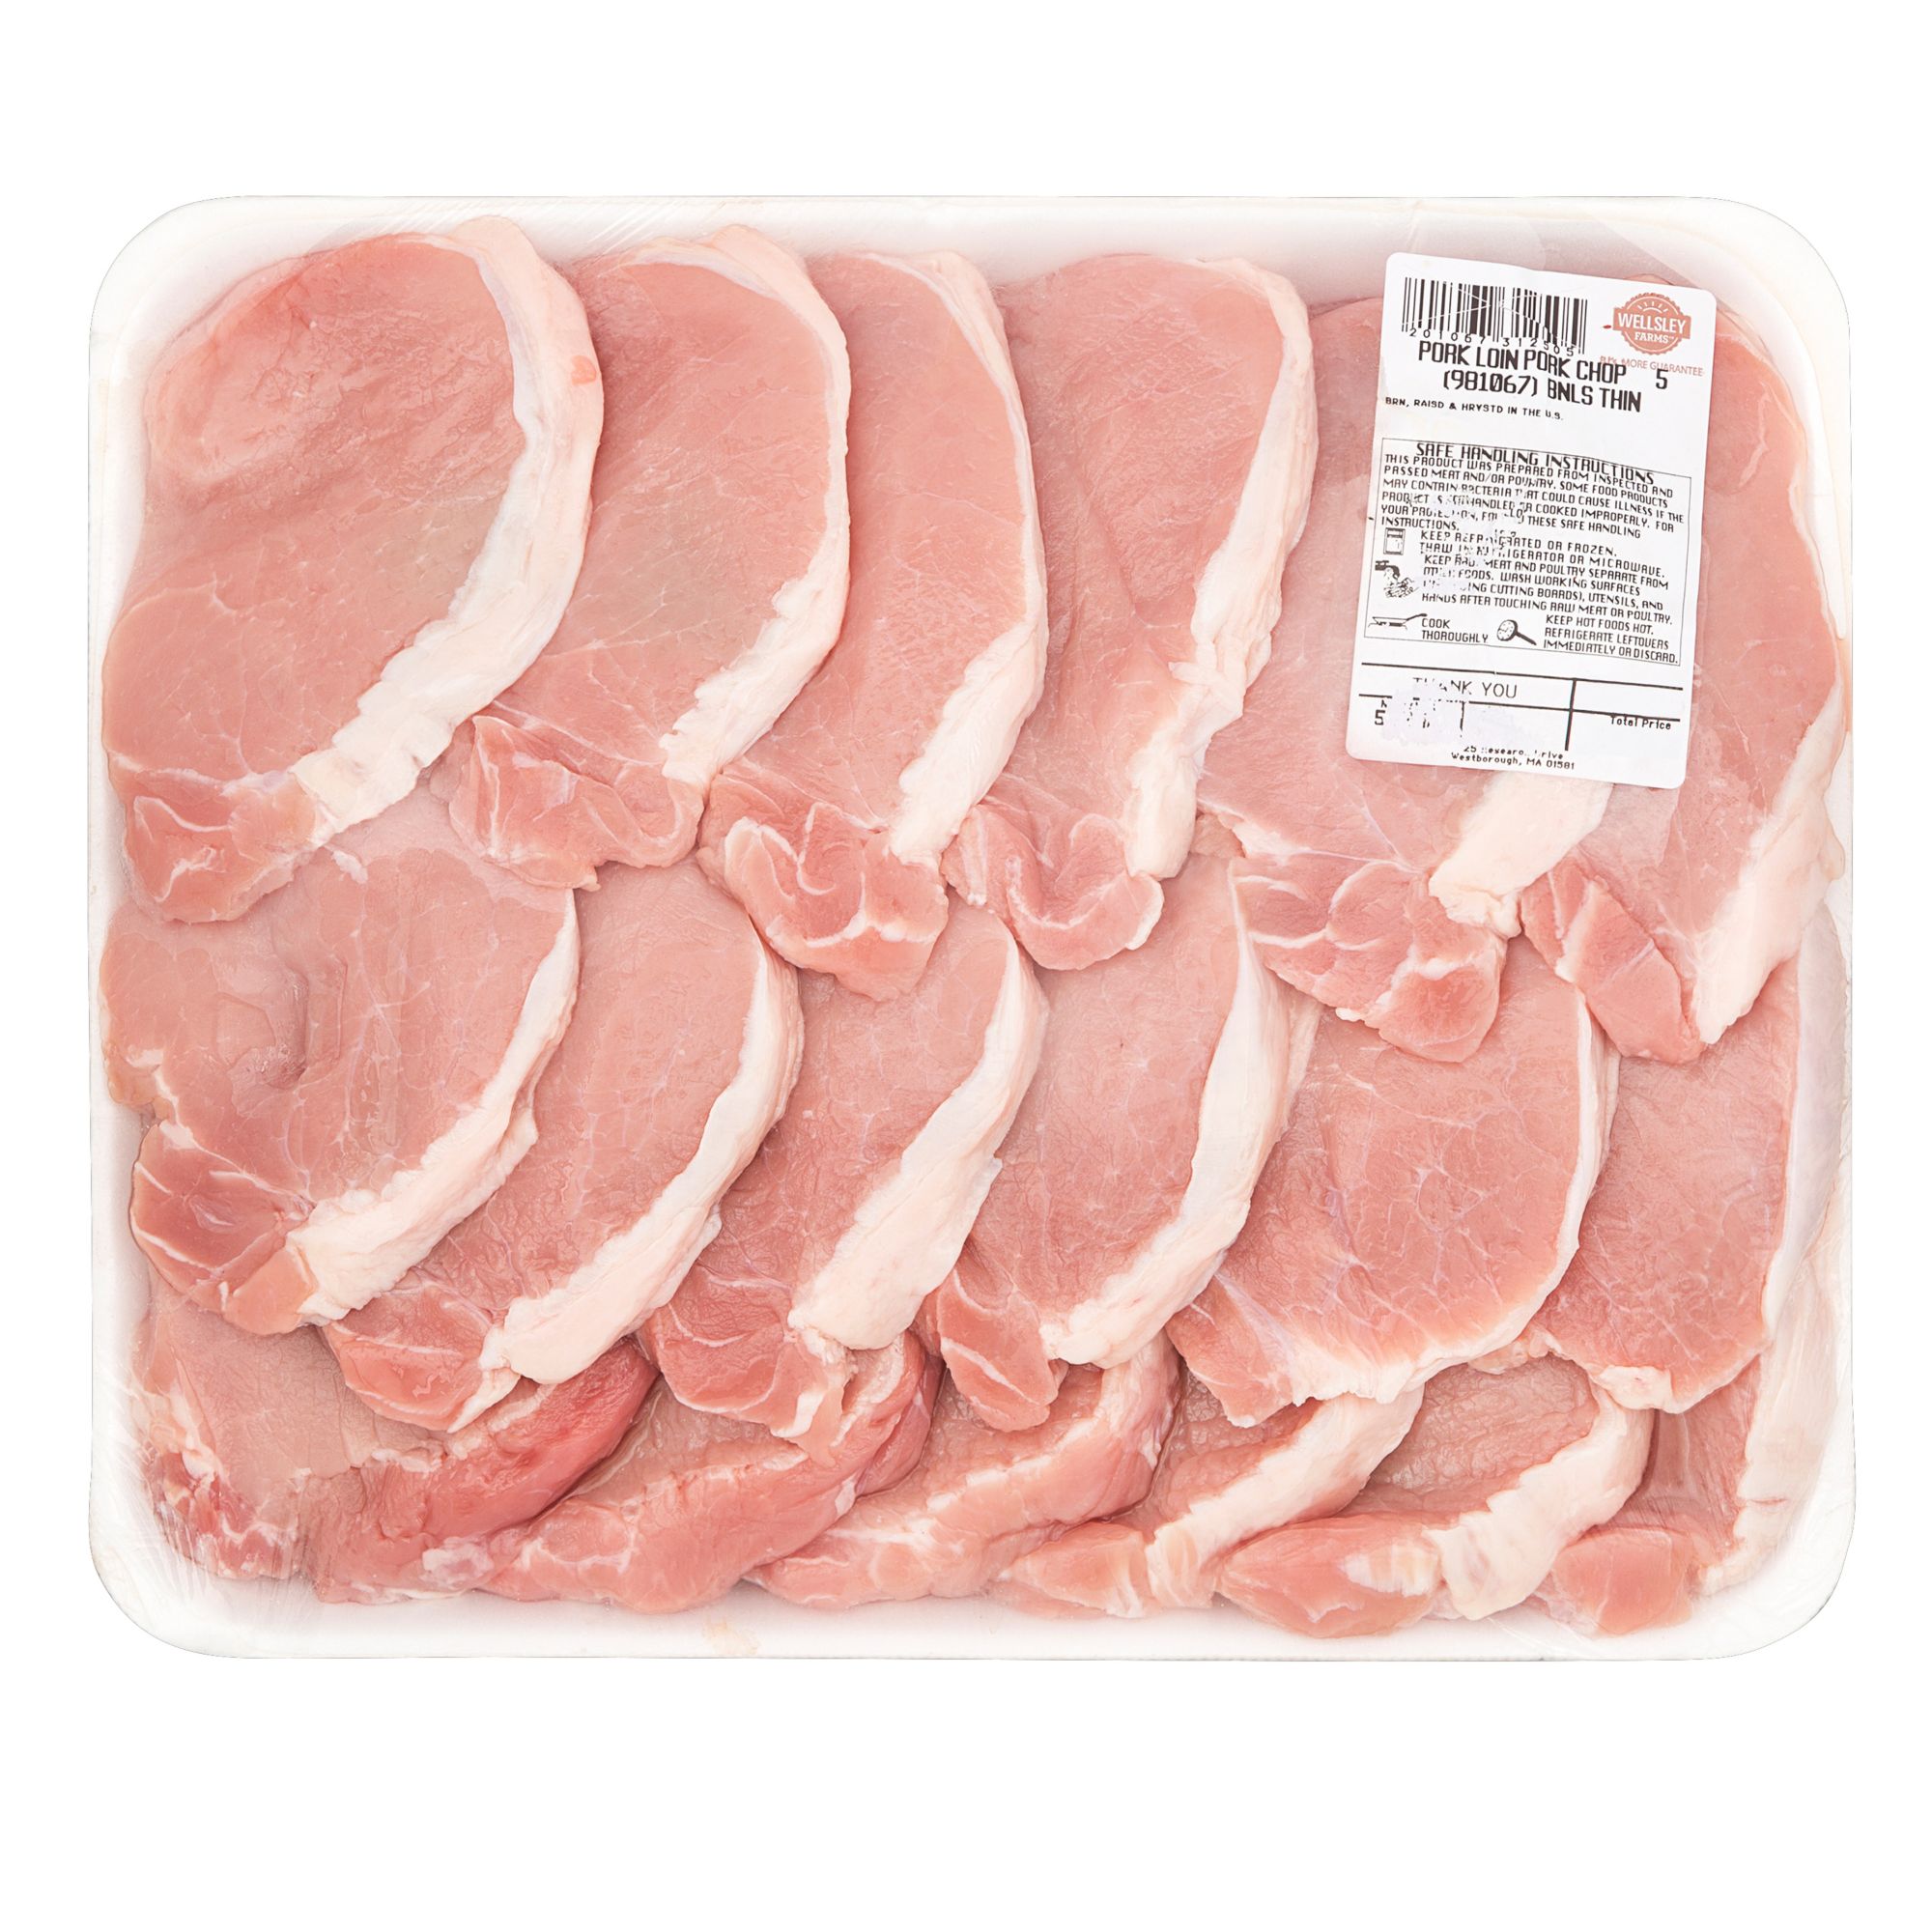 Wellsley Farms Fresh Boneless Thin Sliced Pork Loin Chops, 3.75 - 4.5 lbs